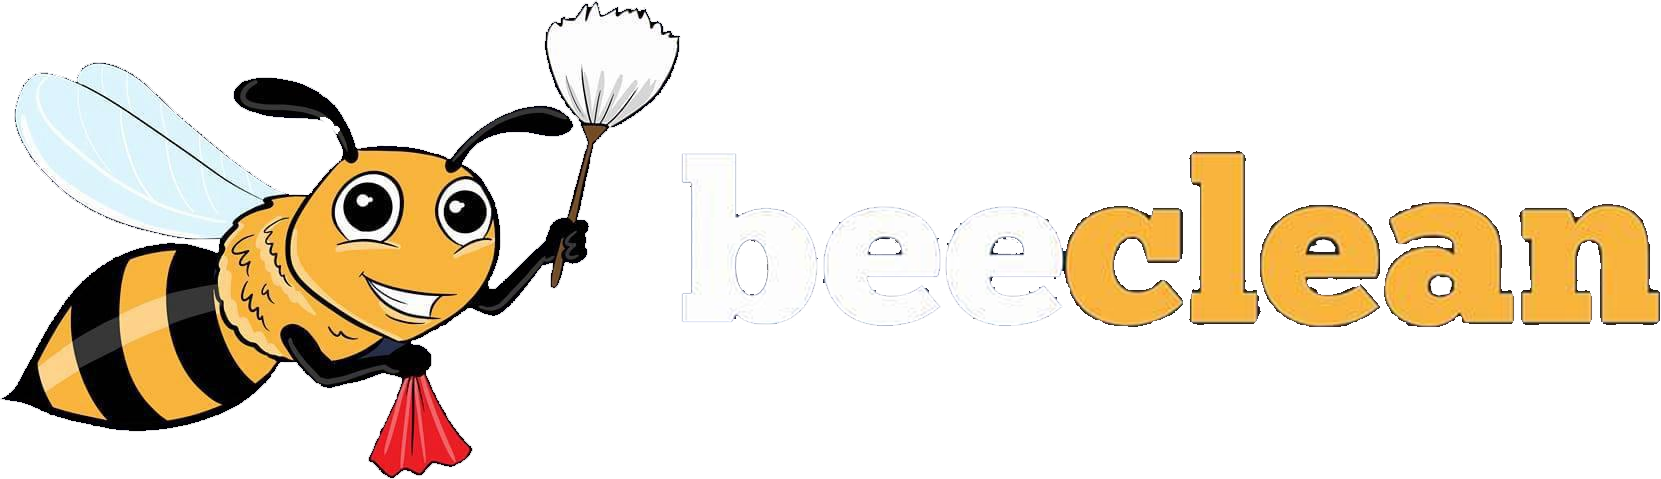 Beeclean logo png